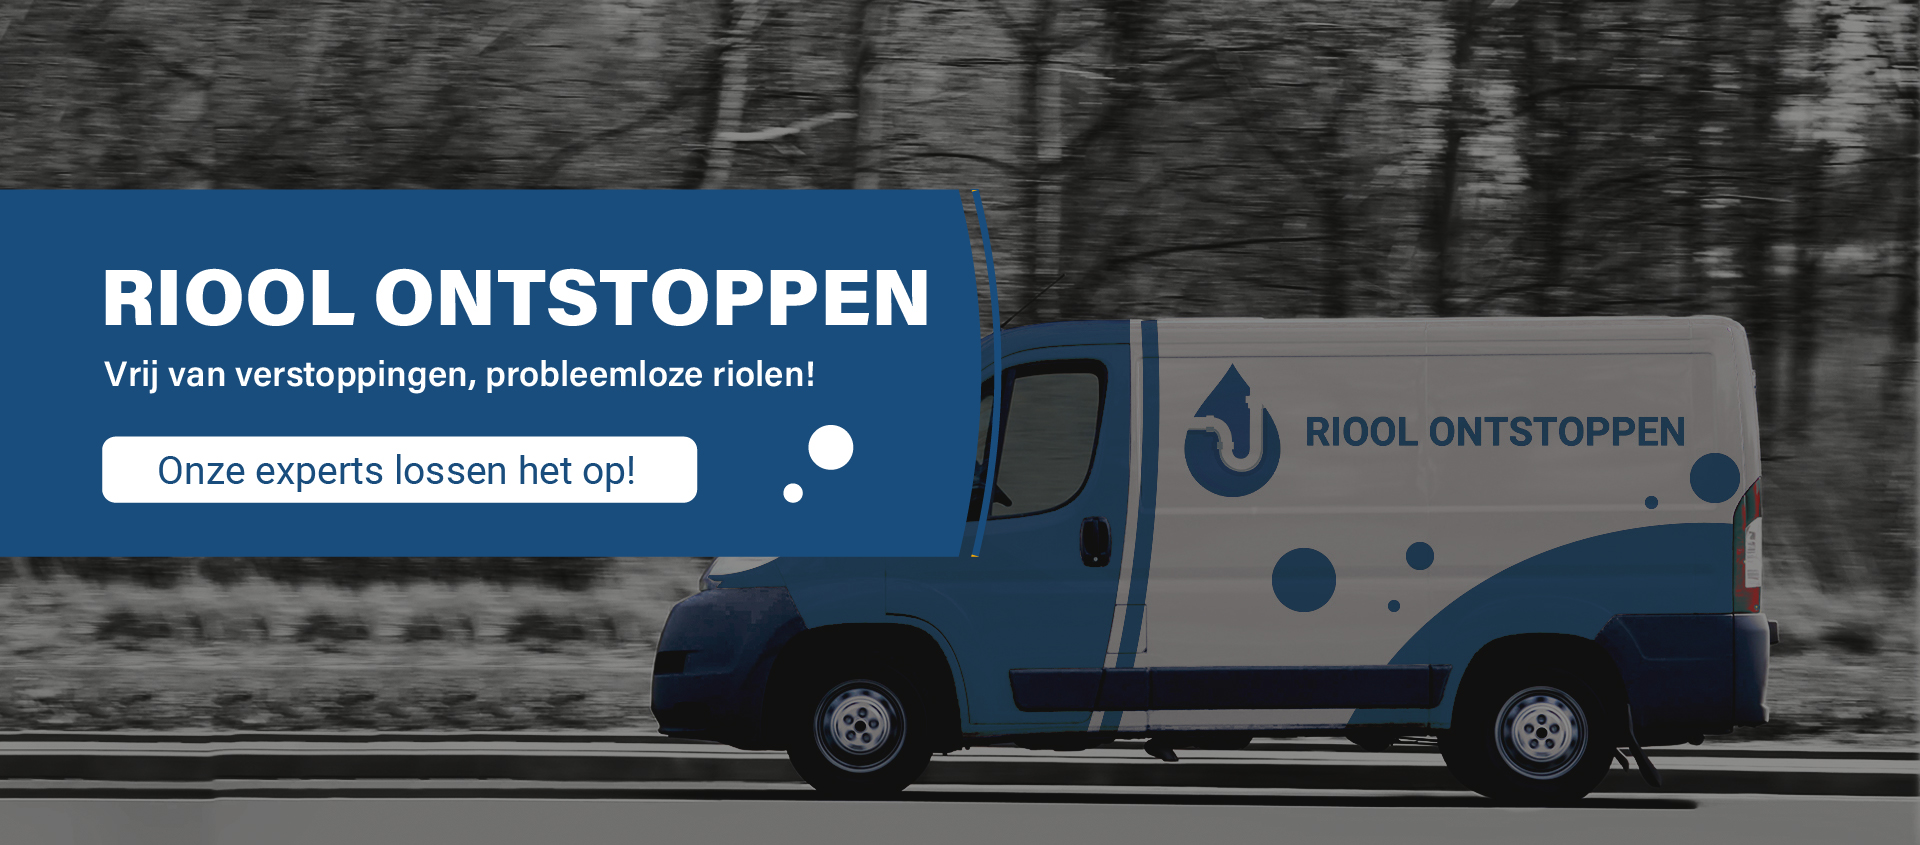 Werkbus van Riool ontstoppen Oosterhout met belettering van het logo